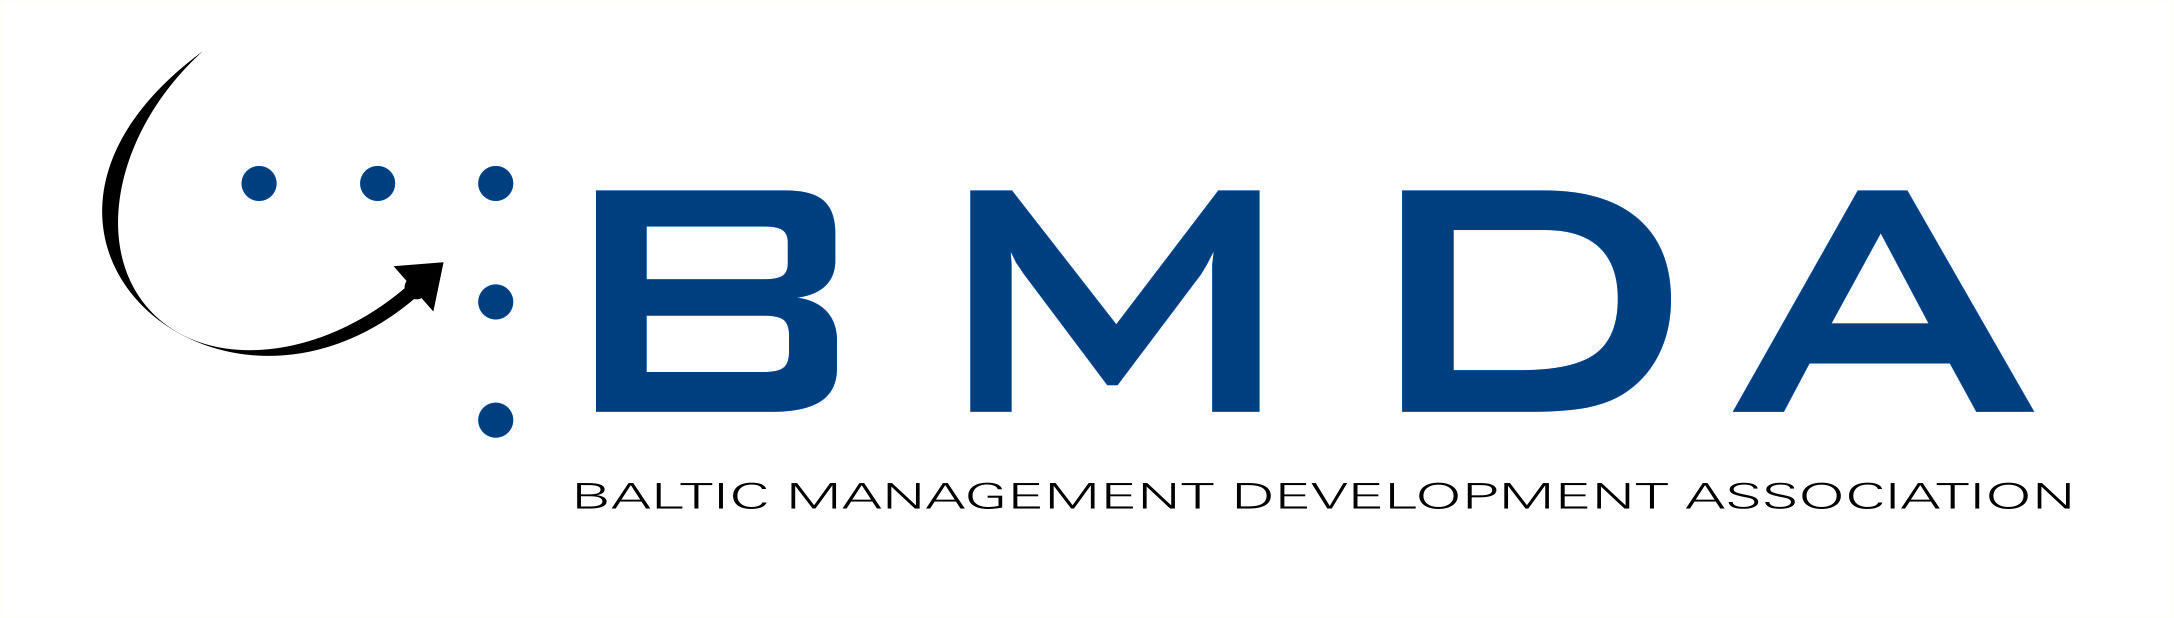 BMDA (Baltic Management Development Association)